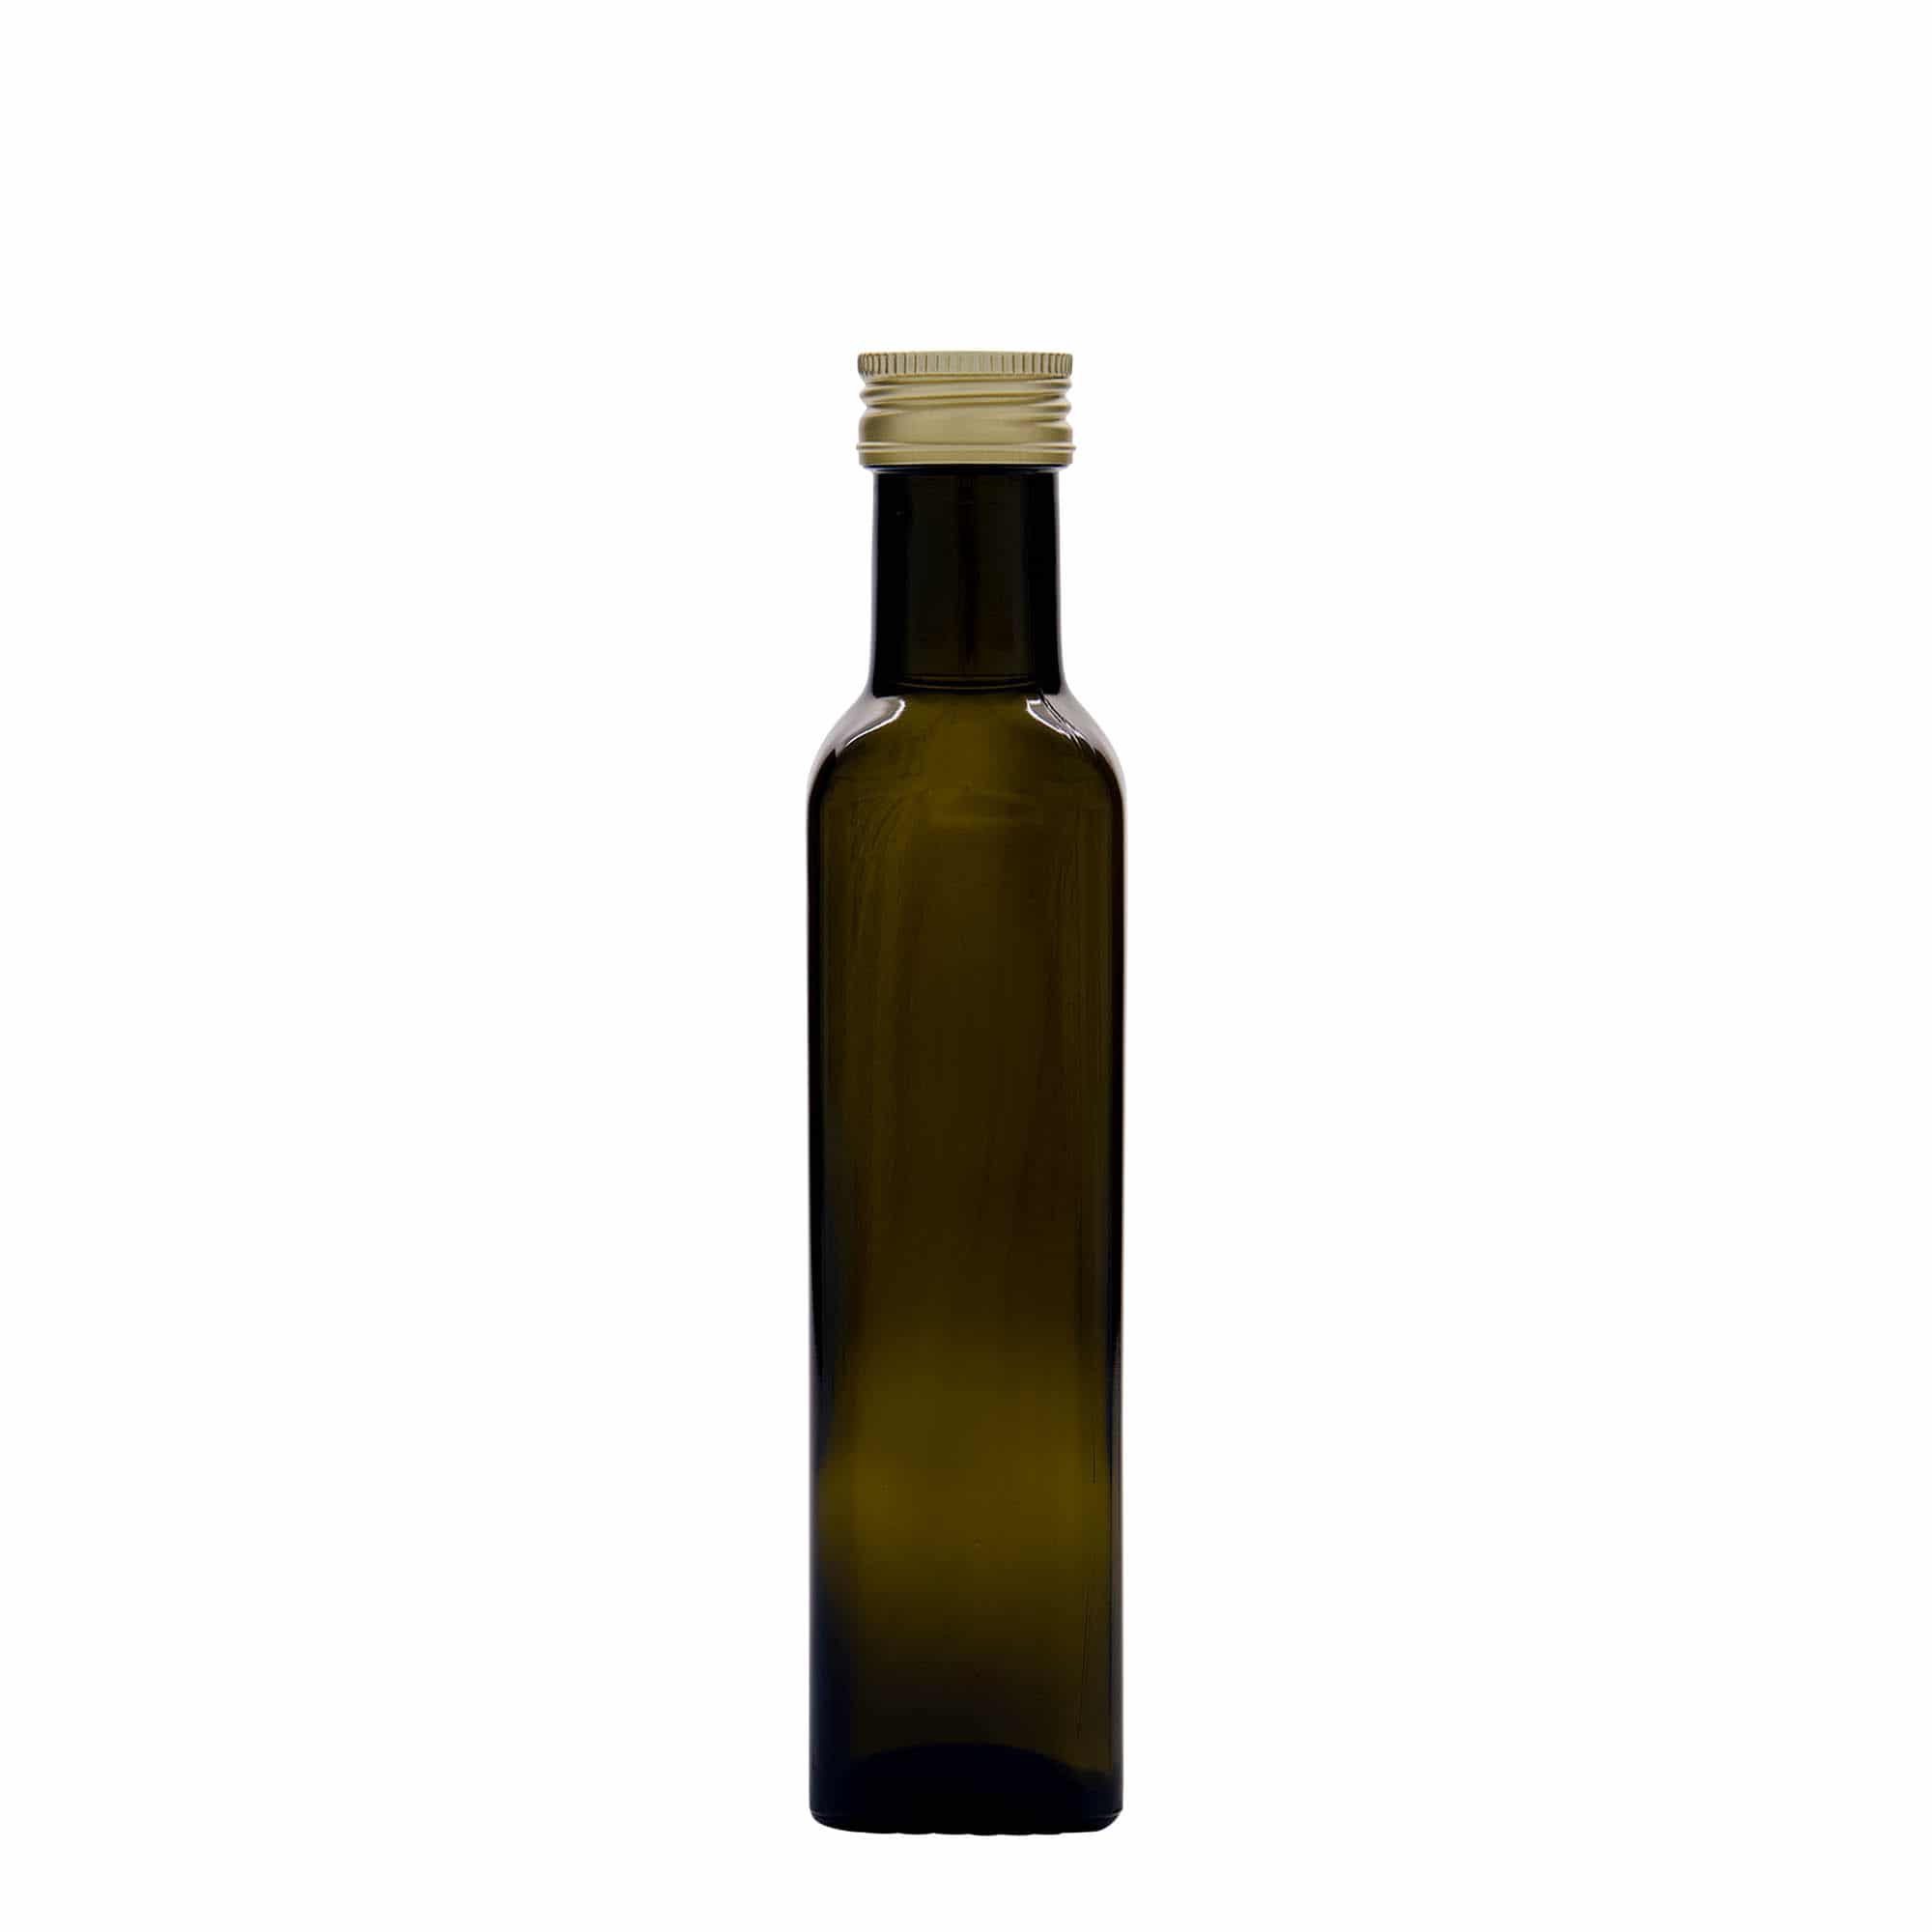 250 ml glasflaske 'Marasca', kvadratisk, antikgrøn, åbning: PP 31,5